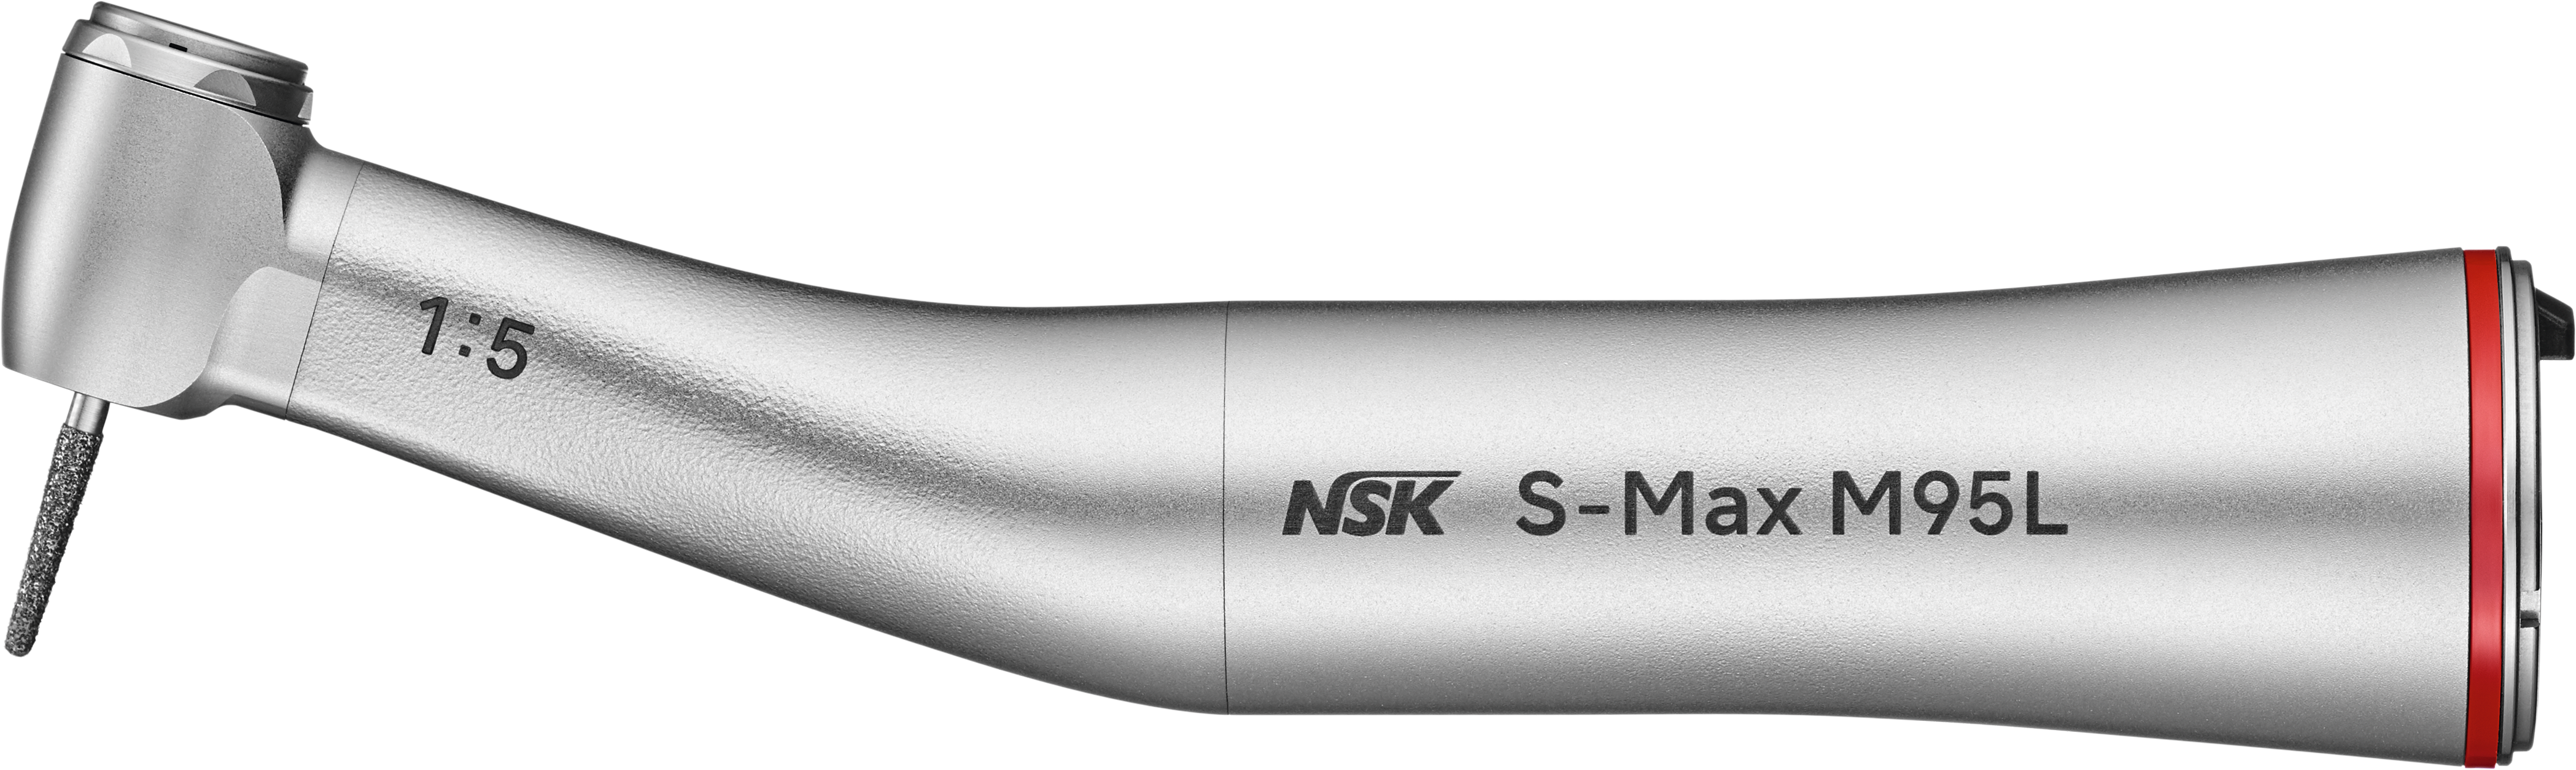 NSK S-Max M95L, Schnelllauf-Winkelstück mit Licht, rot 1:5  -  4-fach Spray, für FG-Bohrer Ø 1,6mm, Edelstahlkörper, Keramik-Kugellager  | Art.Nr.:  C1023